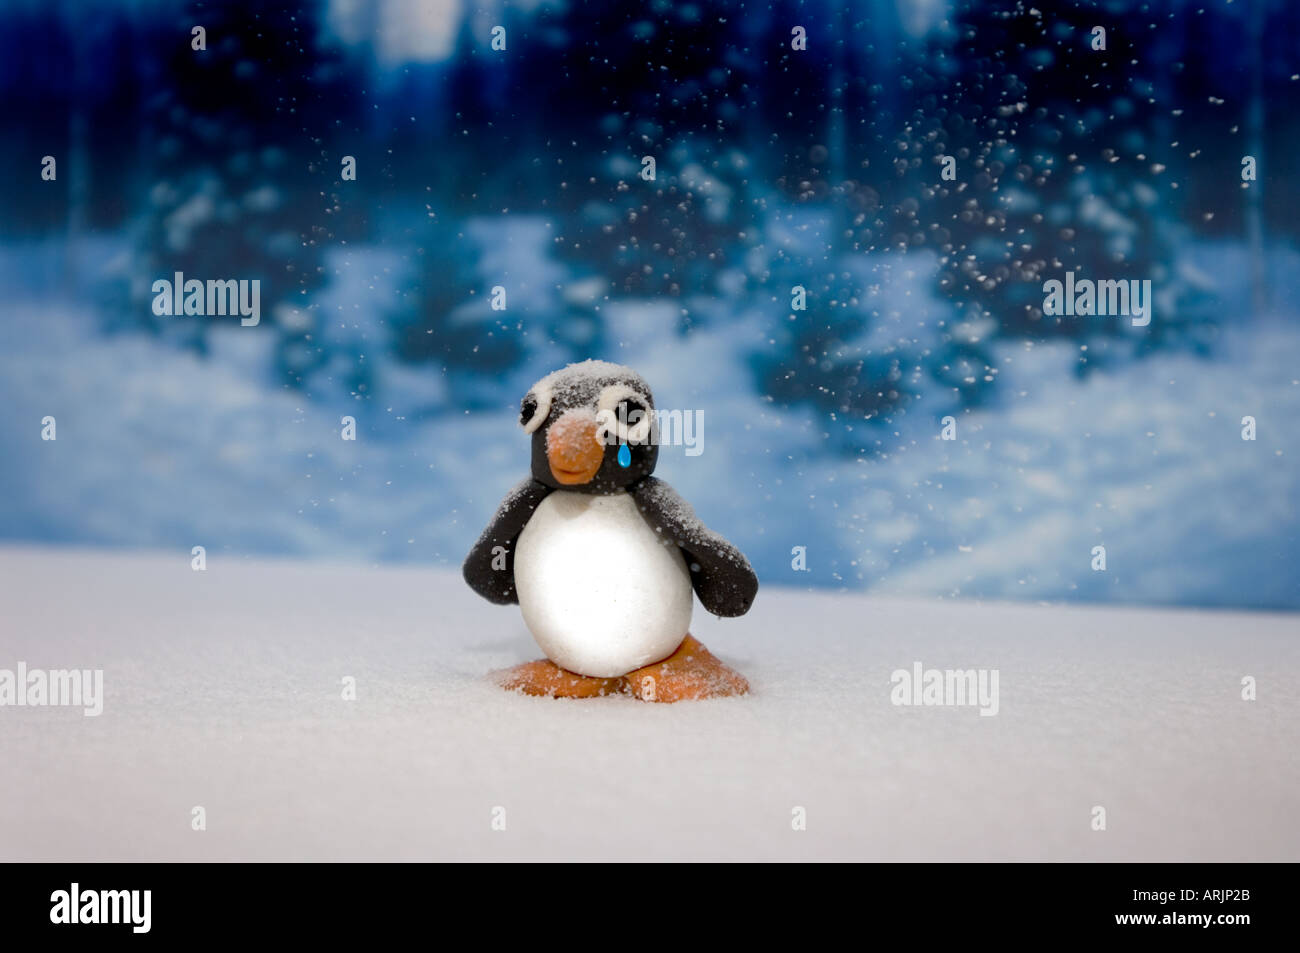 Plastilina childs modelo de un pingüino de llanto y en una escena de invierno Foto de stock